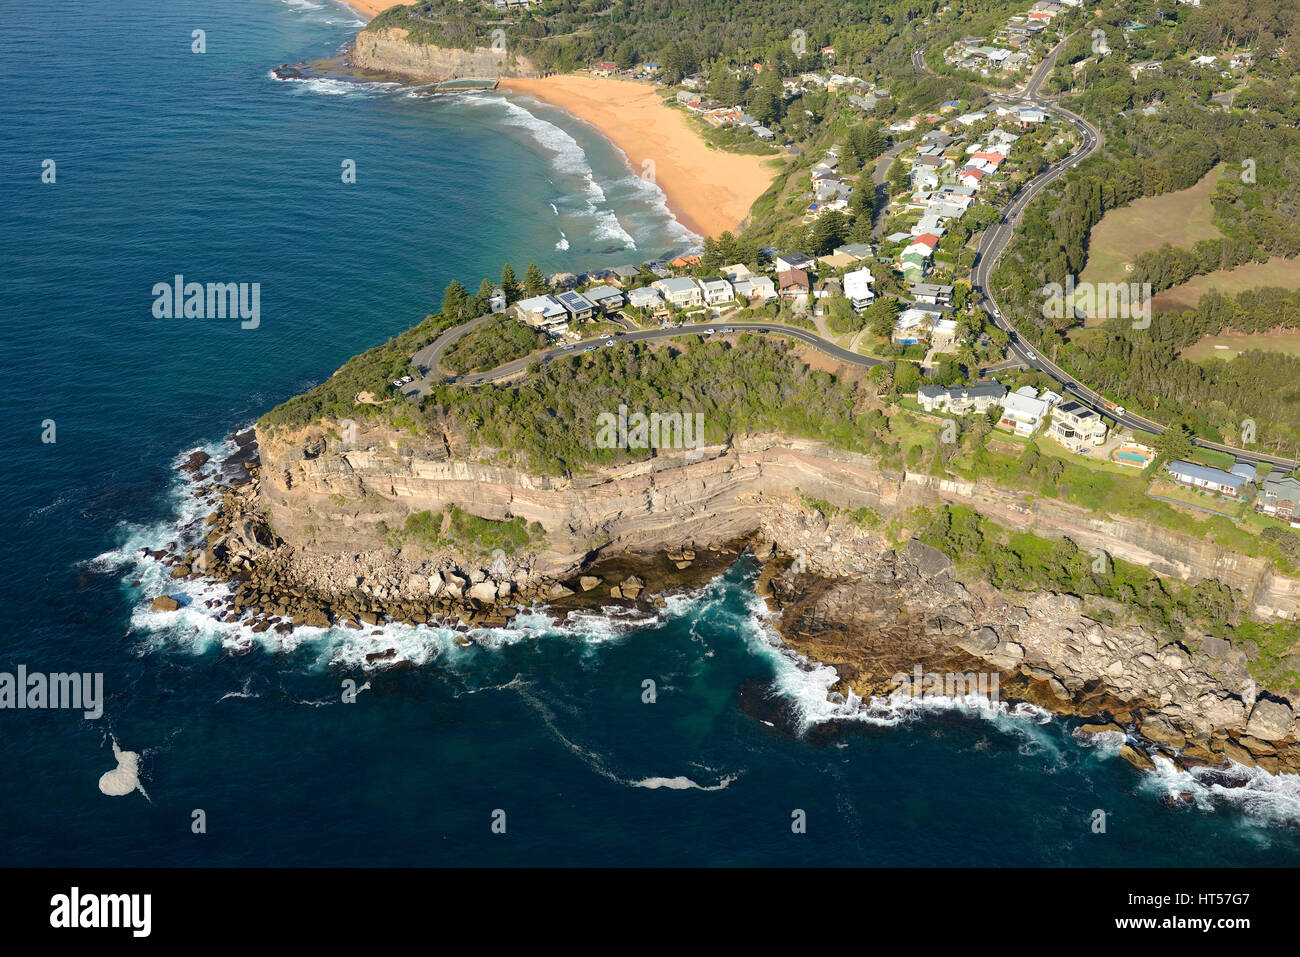 LUFTAUFNAHME. Malerische Strandgemeinde nördlich von Sydneys Zentrum. Bilgola Beach, Sydney, New South Wales, Australien. Stockfoto